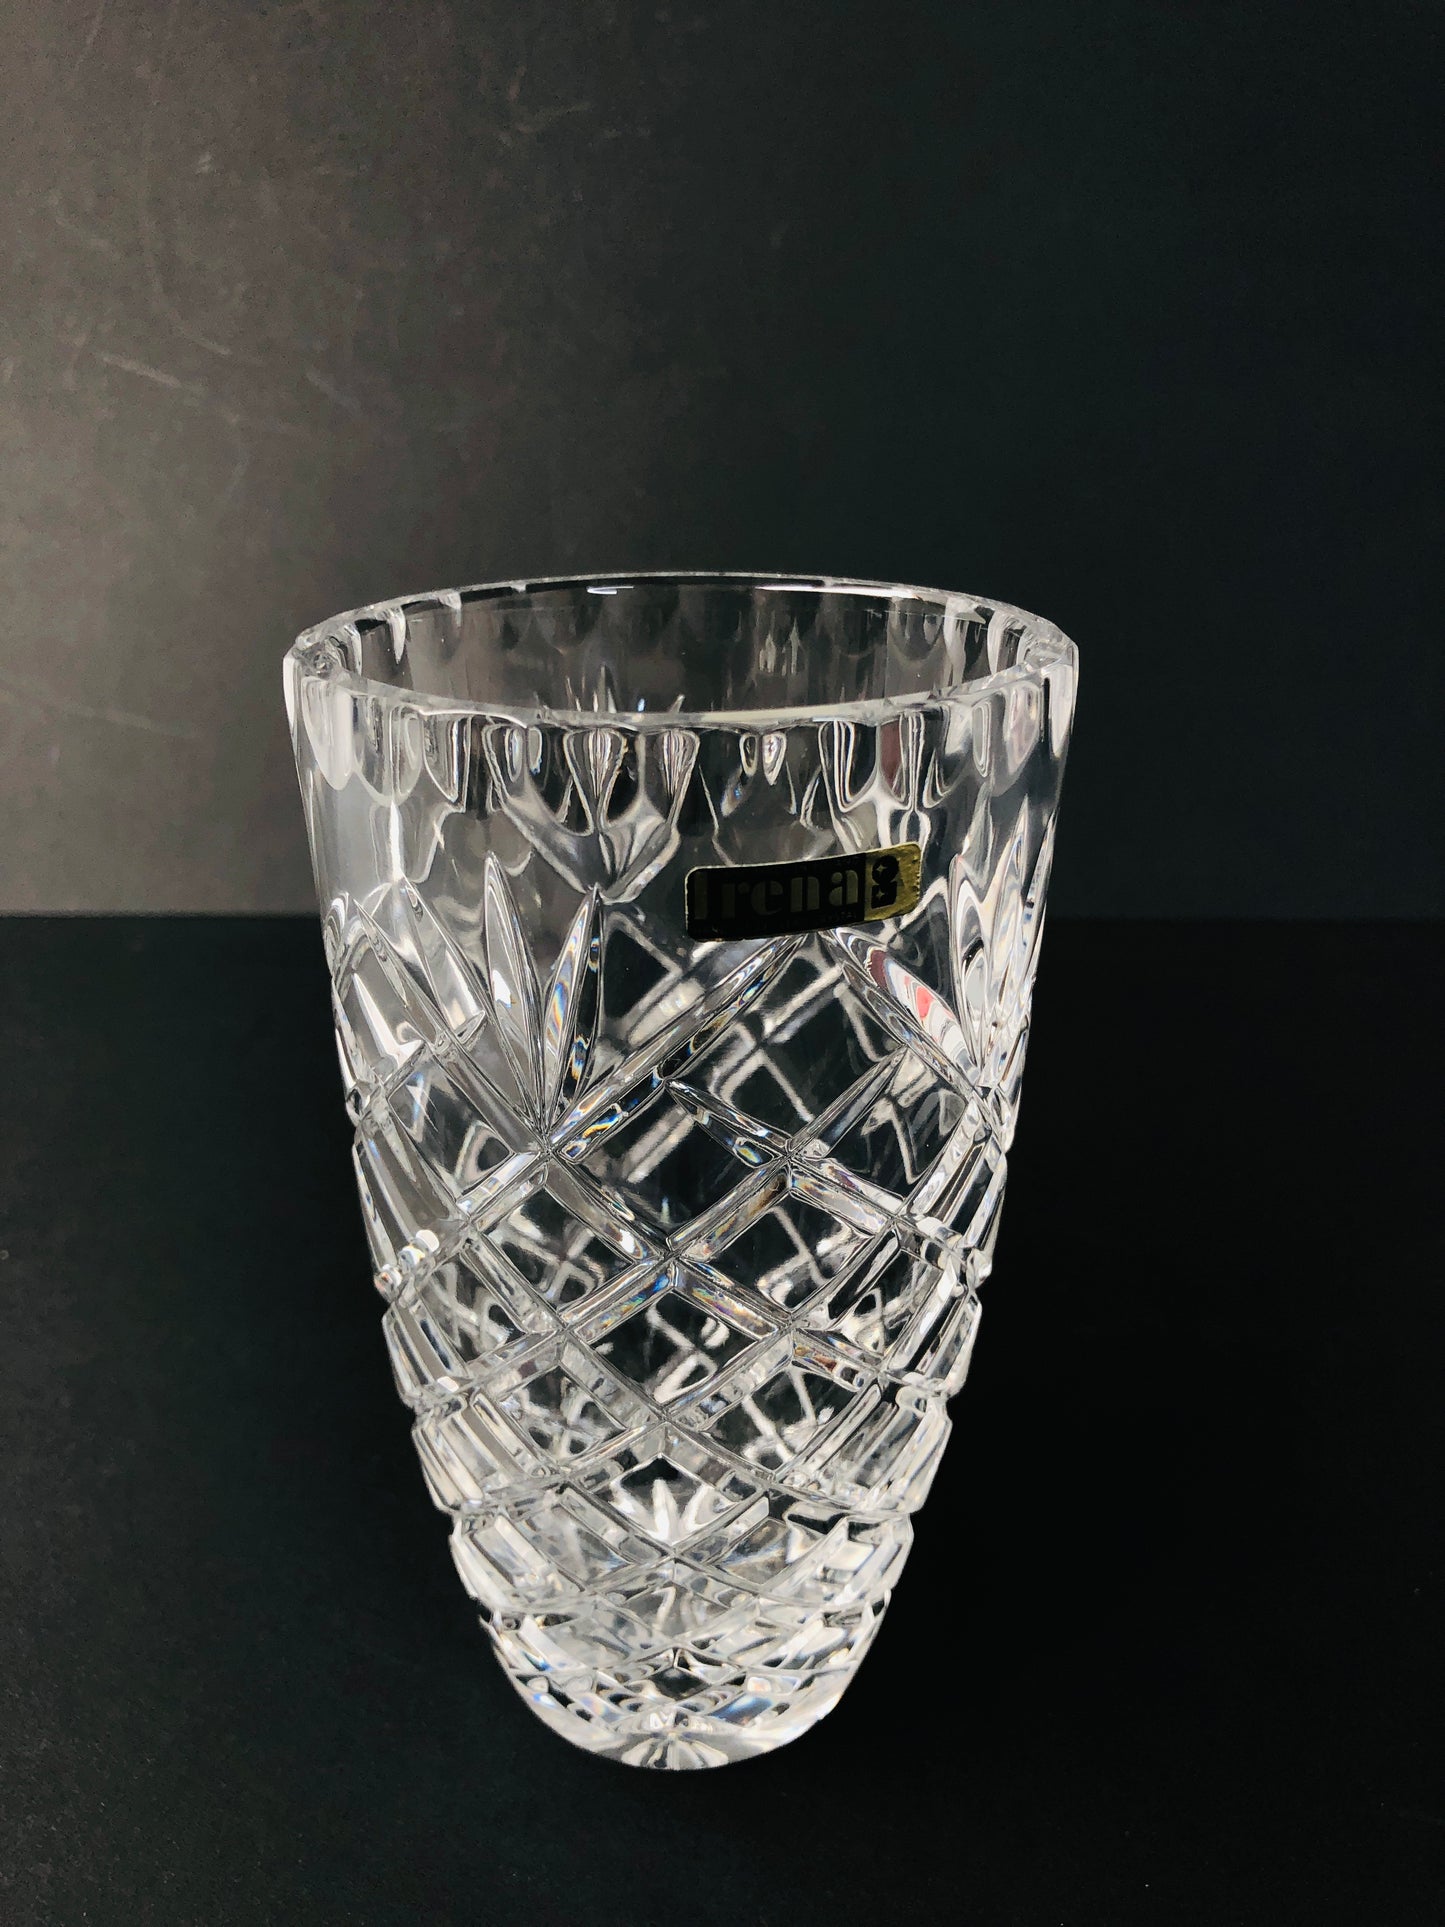 
                  
                    Irena-  Lead Crystal Vase (15854)
                  
                